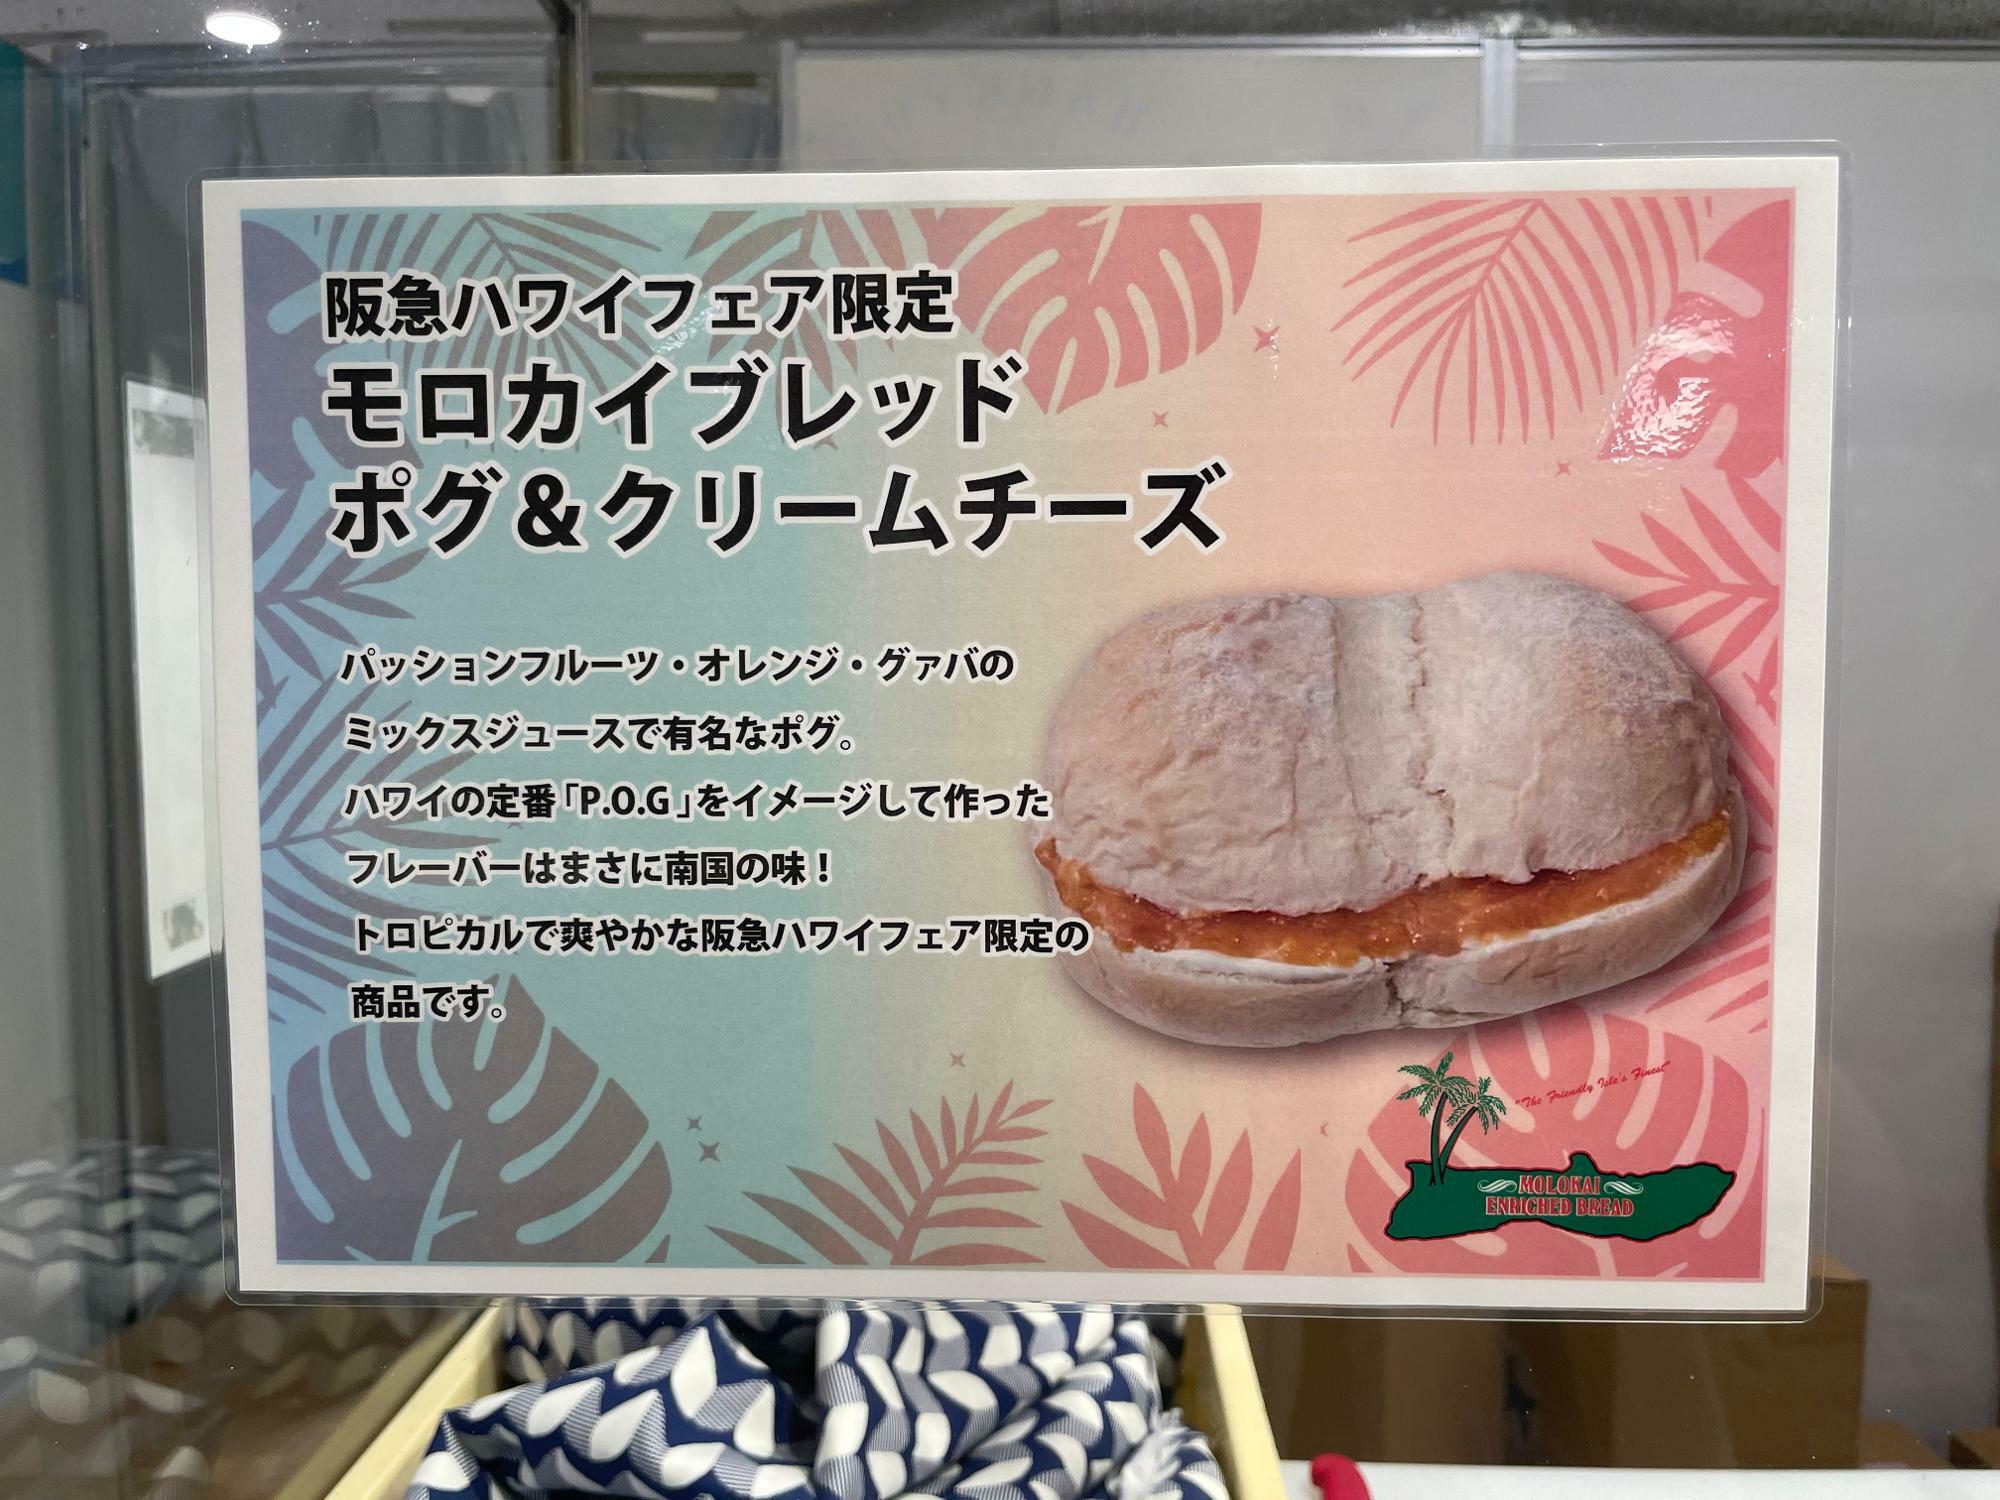 阪急ハワイフェア限定のモロカイブレッド「ポグ＆クリームチーズ」